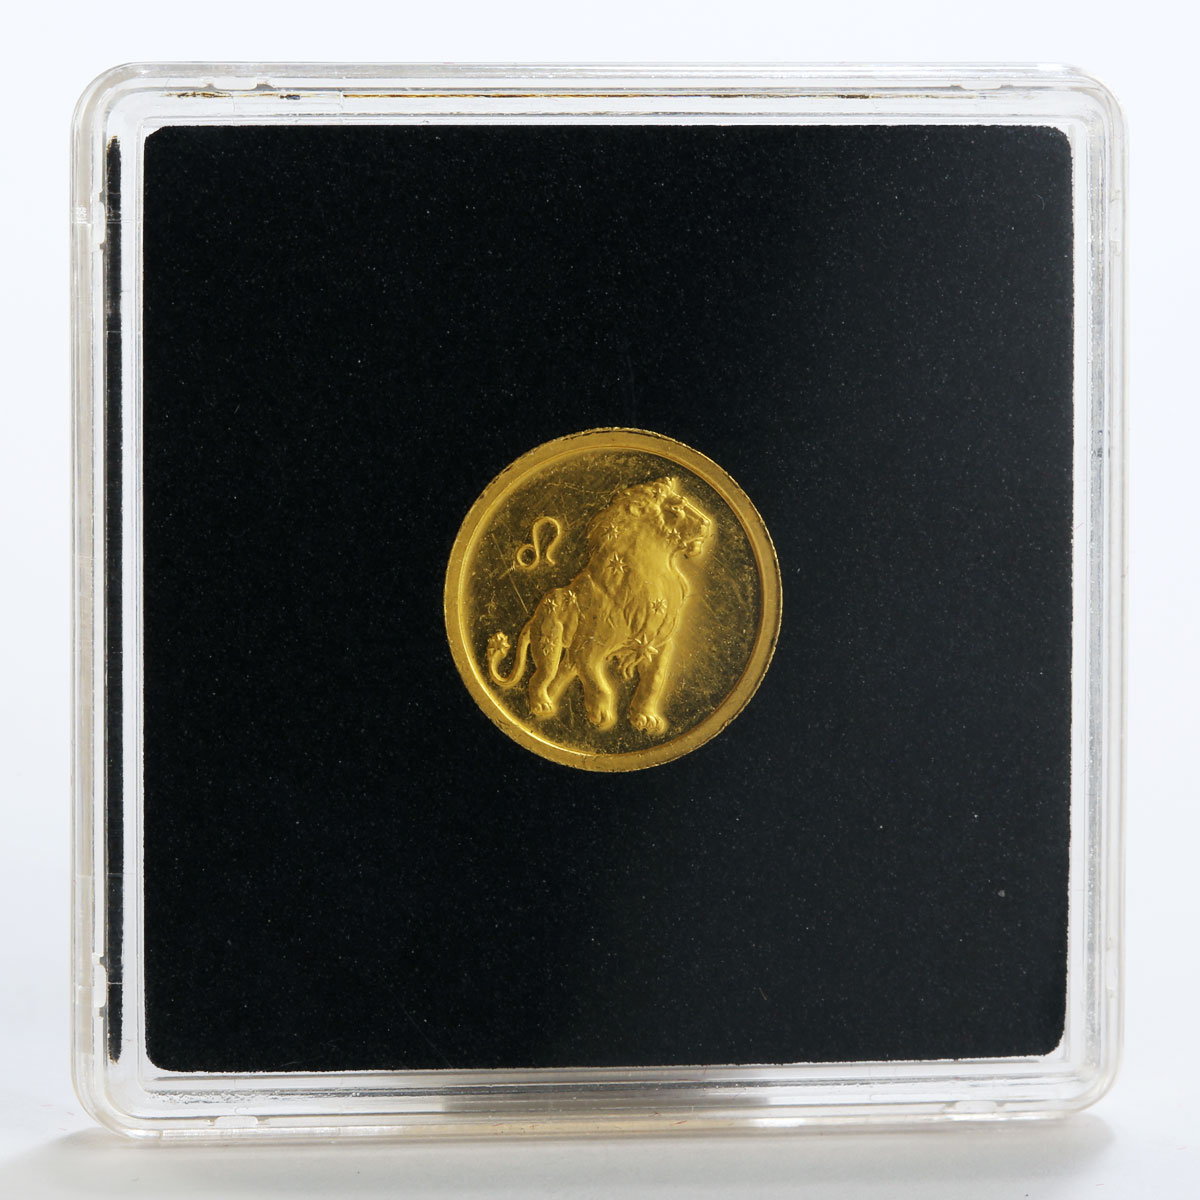 Russia 25 rubles Zodiac Leo Lion gold coin 2002